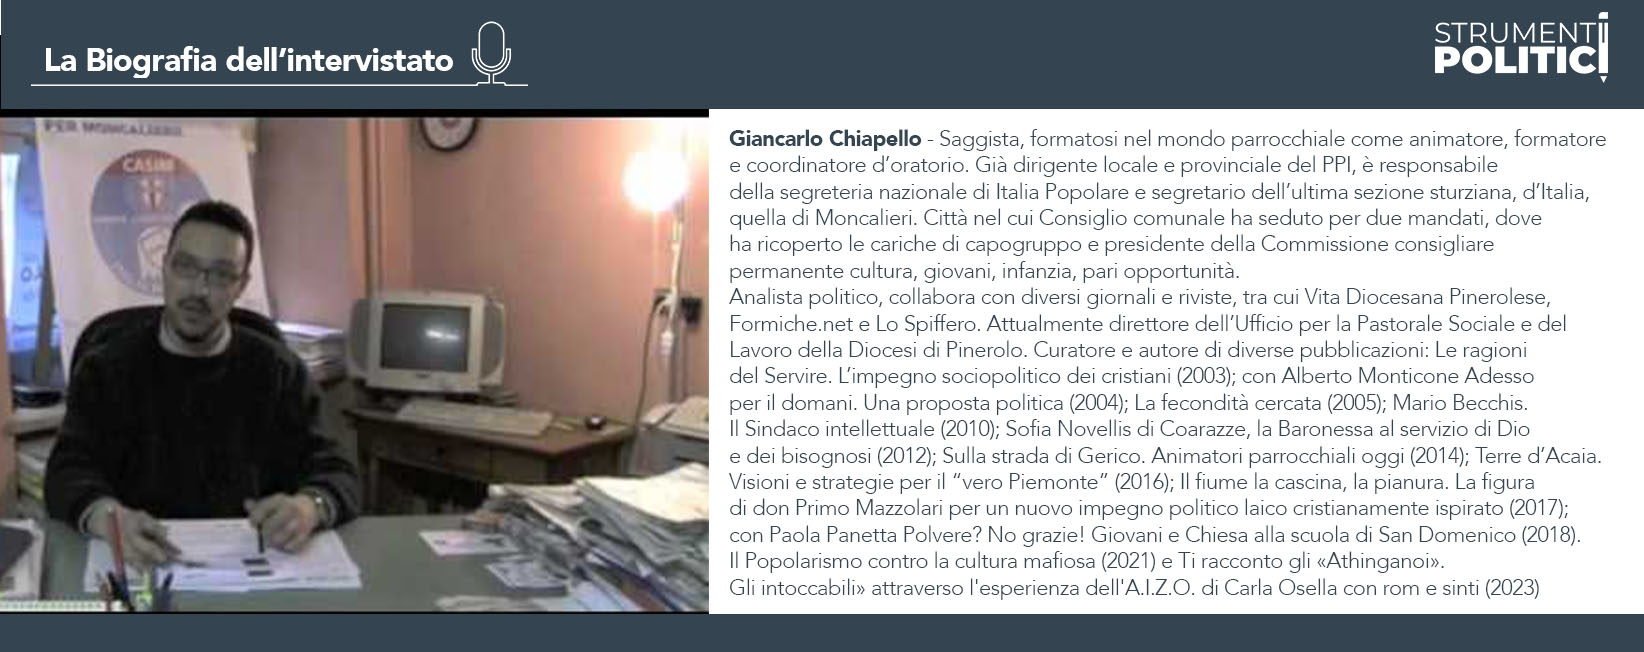 Infografica - La biografia di Giancarlo Chiapello